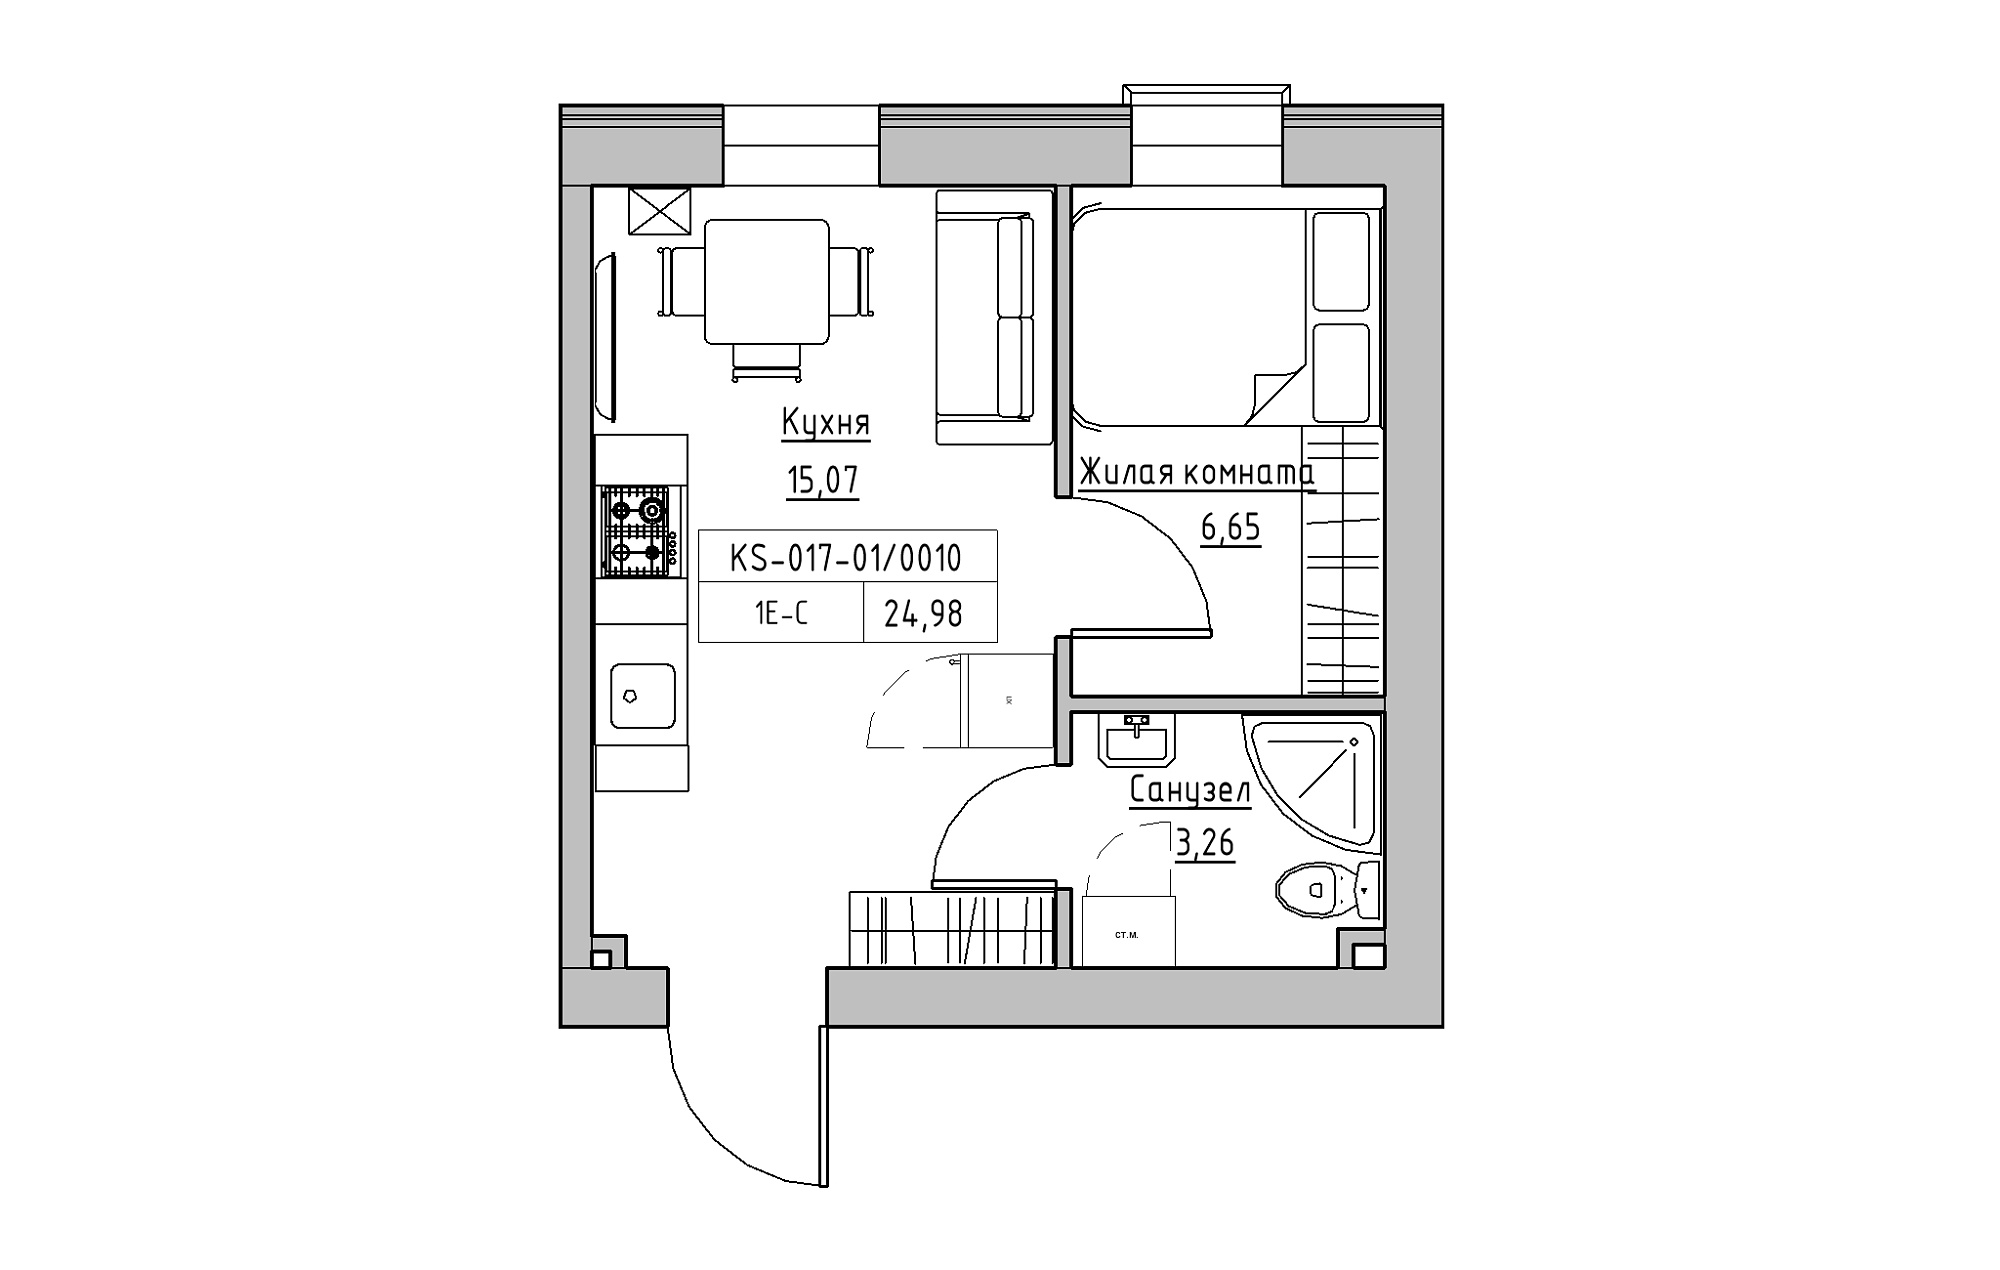 Планировка 1-к квартира площей 24.98м2, KS-017-01/0010.